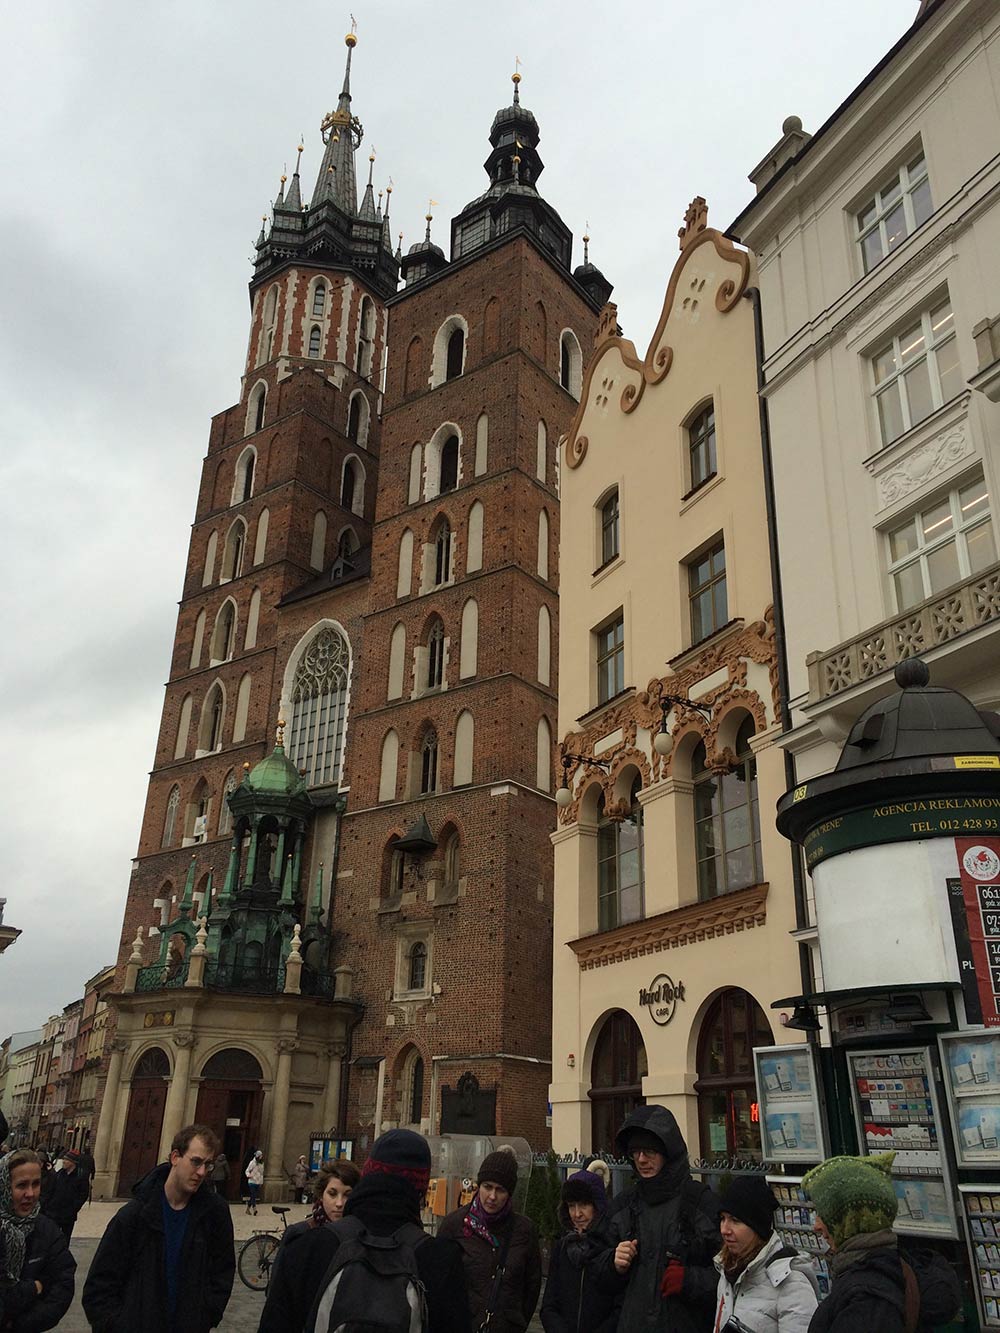 Descubra tudo sobre a Basílica de Santa Maria e outras atrações de Cracóvia nesse post!